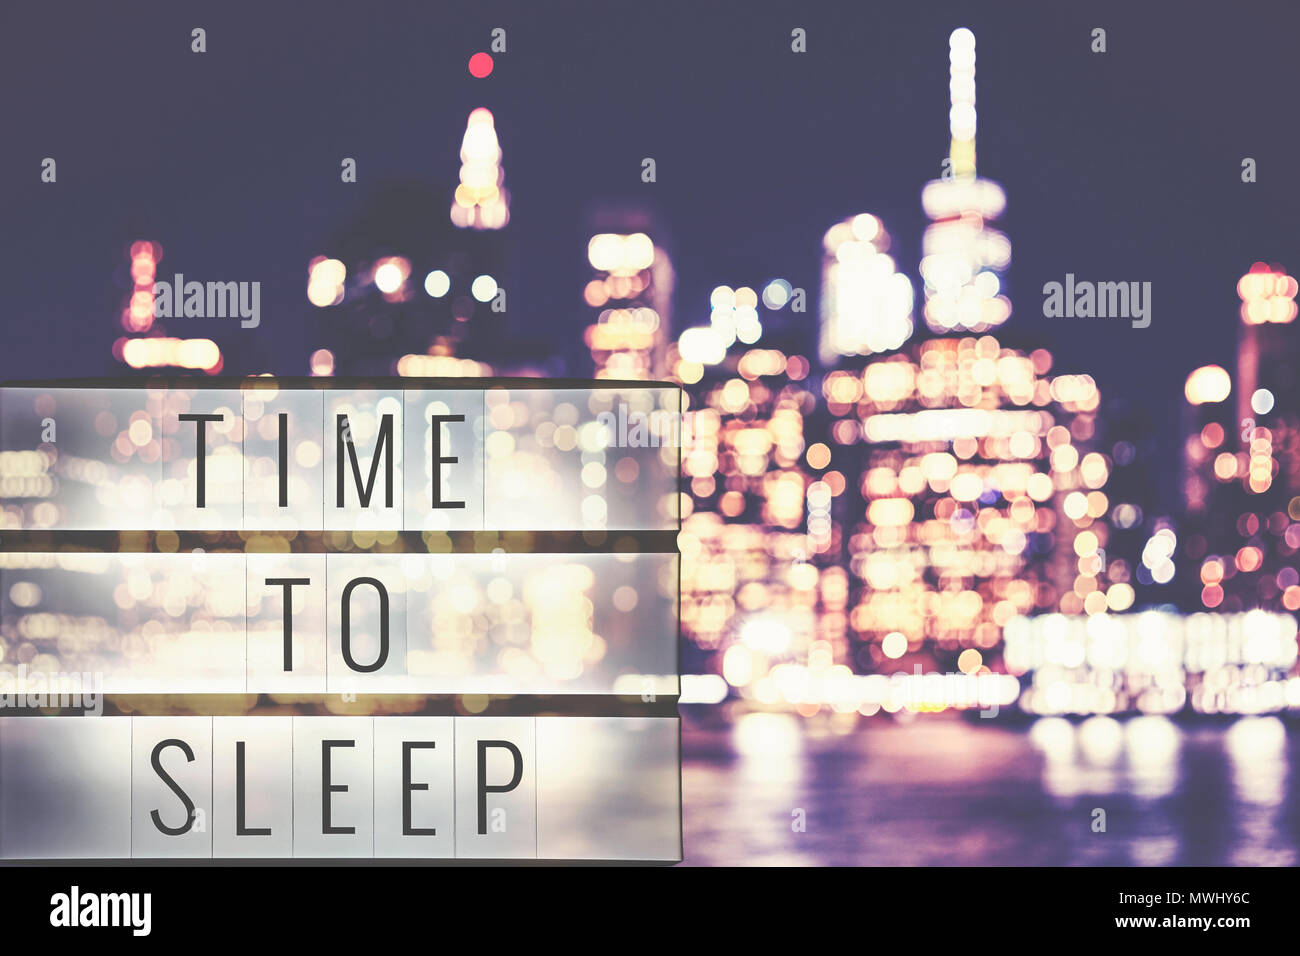 L'heure de dormir texte dans une lightbox, Manhattan de nuit brouillée en arrière-plan, style cinématographique toned photo. Banque D'Images